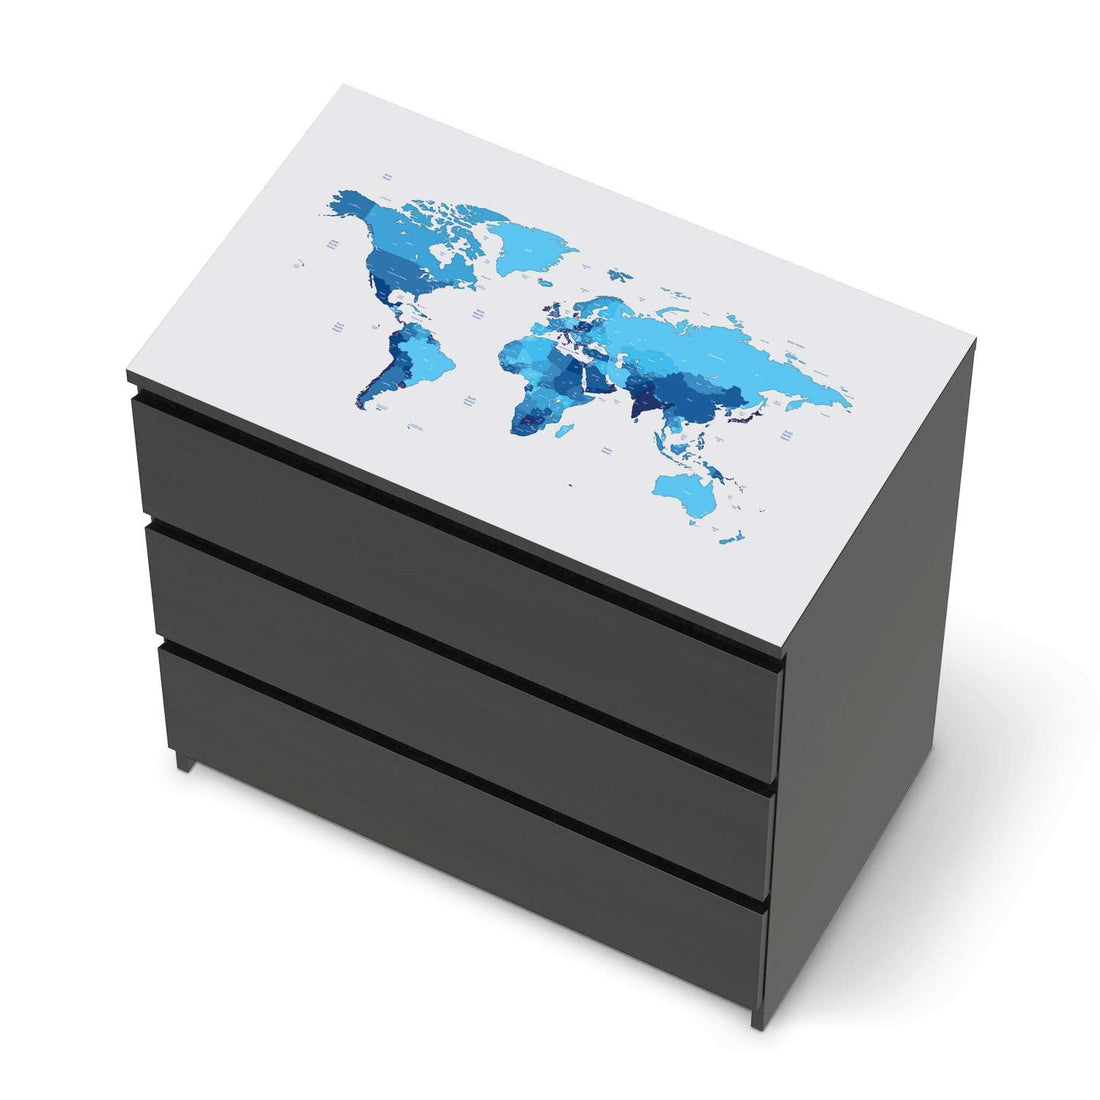 Möbelfolie Politische Weltkarte - IKEA Malm Kommode 3 Schubladen [oben] - schwarz